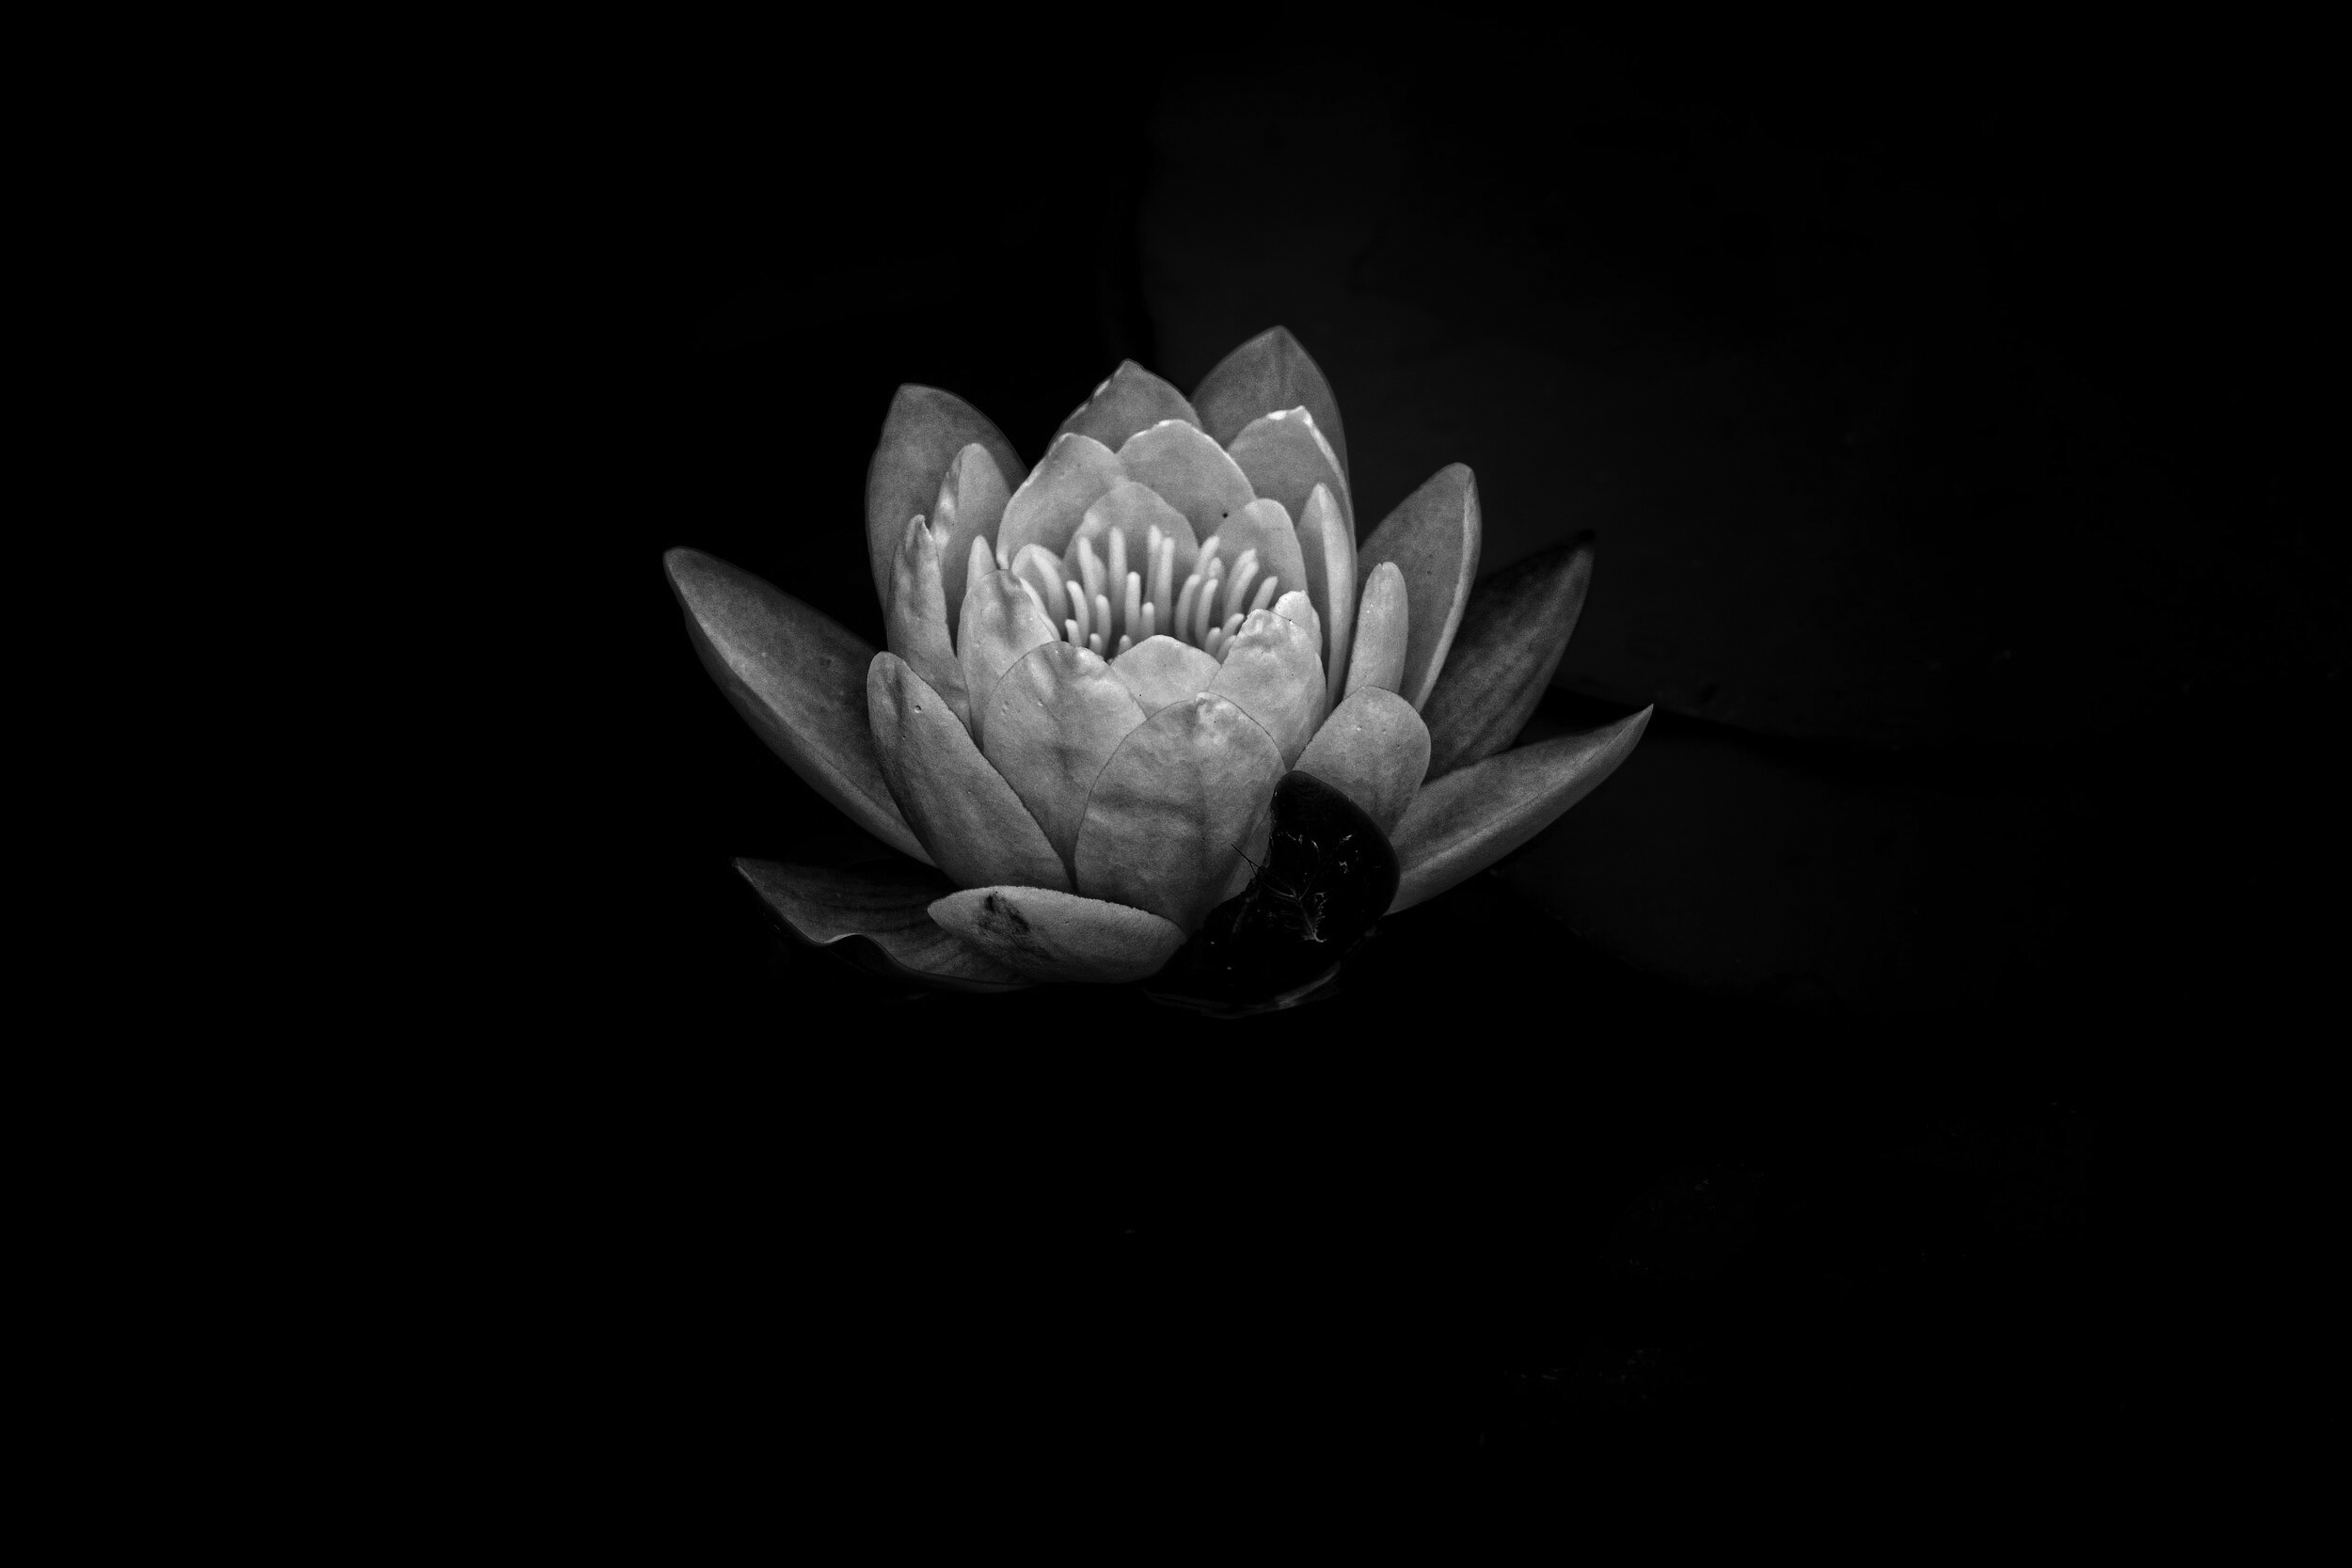 Hoa sen trắng nền đen: Hãy chiêm ngưỡng vẻ đẹp thanh thoát và tinh tế của hoa sen trắng nền đen như một nét trang trí lộng lẫy trong không gian sống của bạn. Hình ảnh sẽ khiến bạn tràn đầy bình yên và sự thanh tịnh của đời sống.